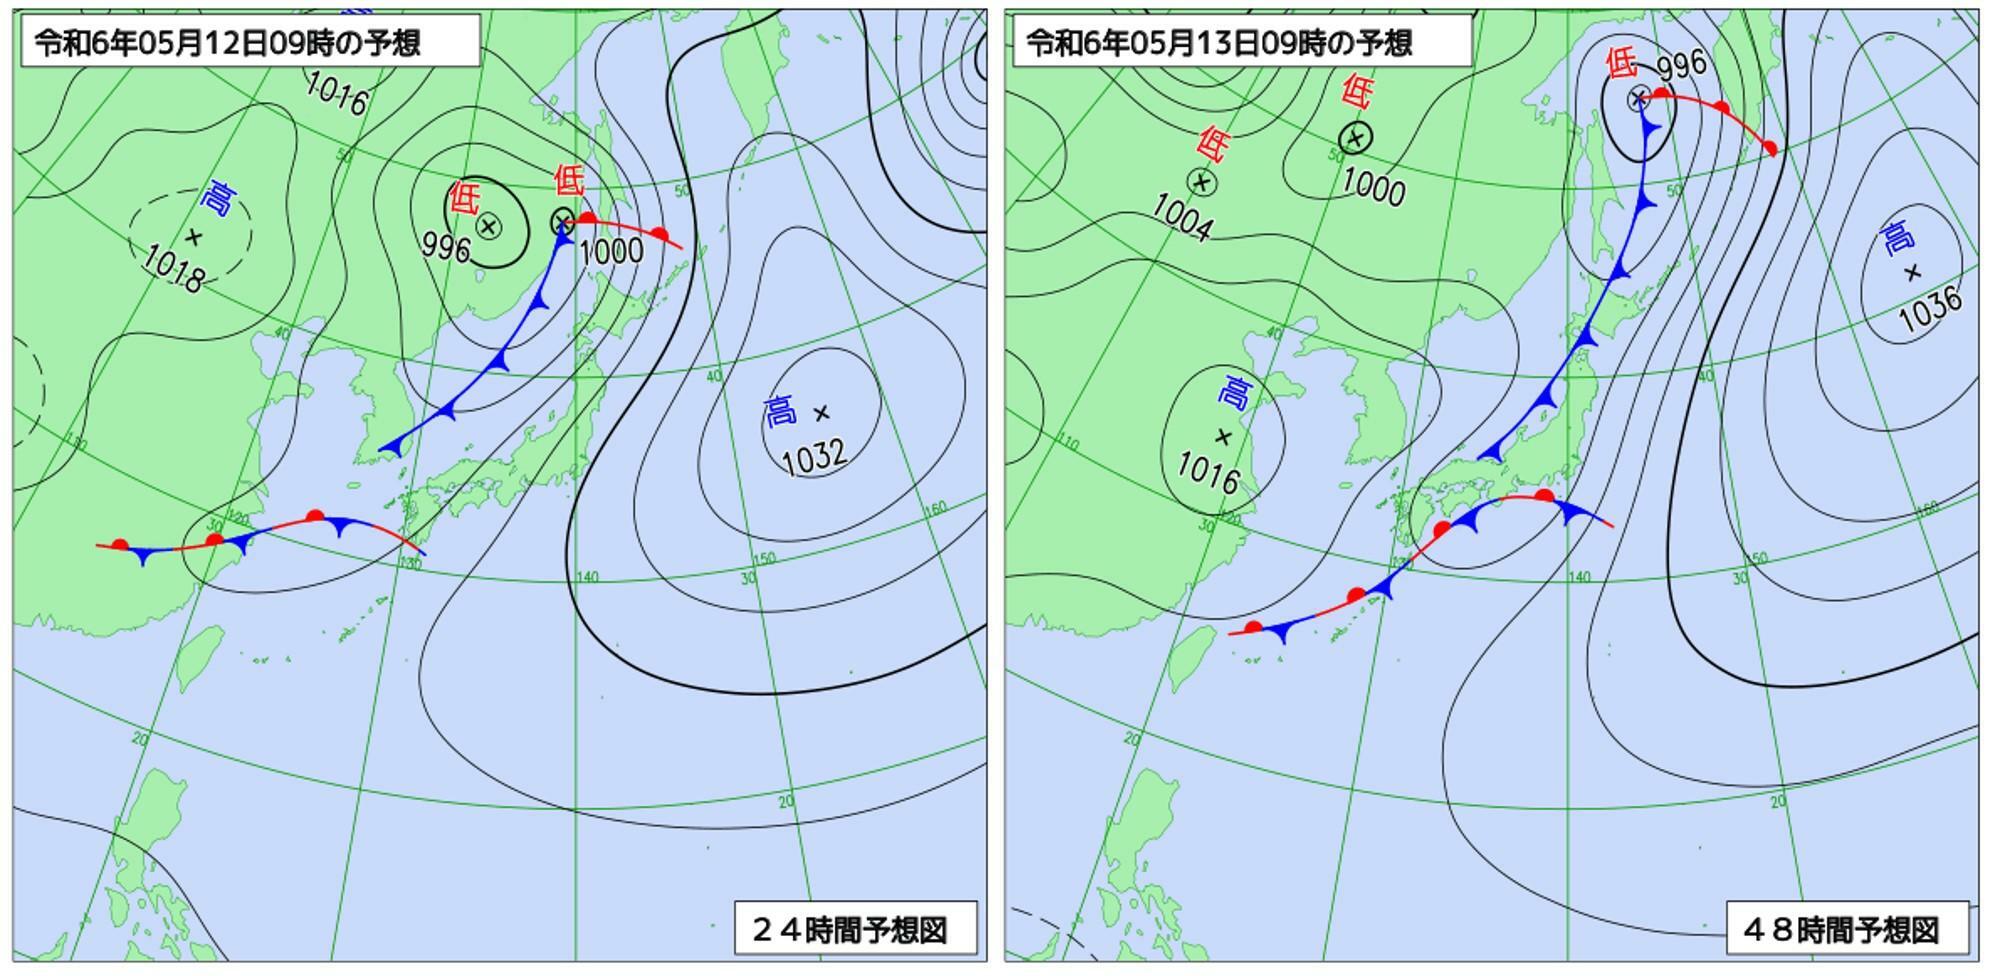 （左）12日9時、（右）13日9時の予想天気図（気象庁HPより）。